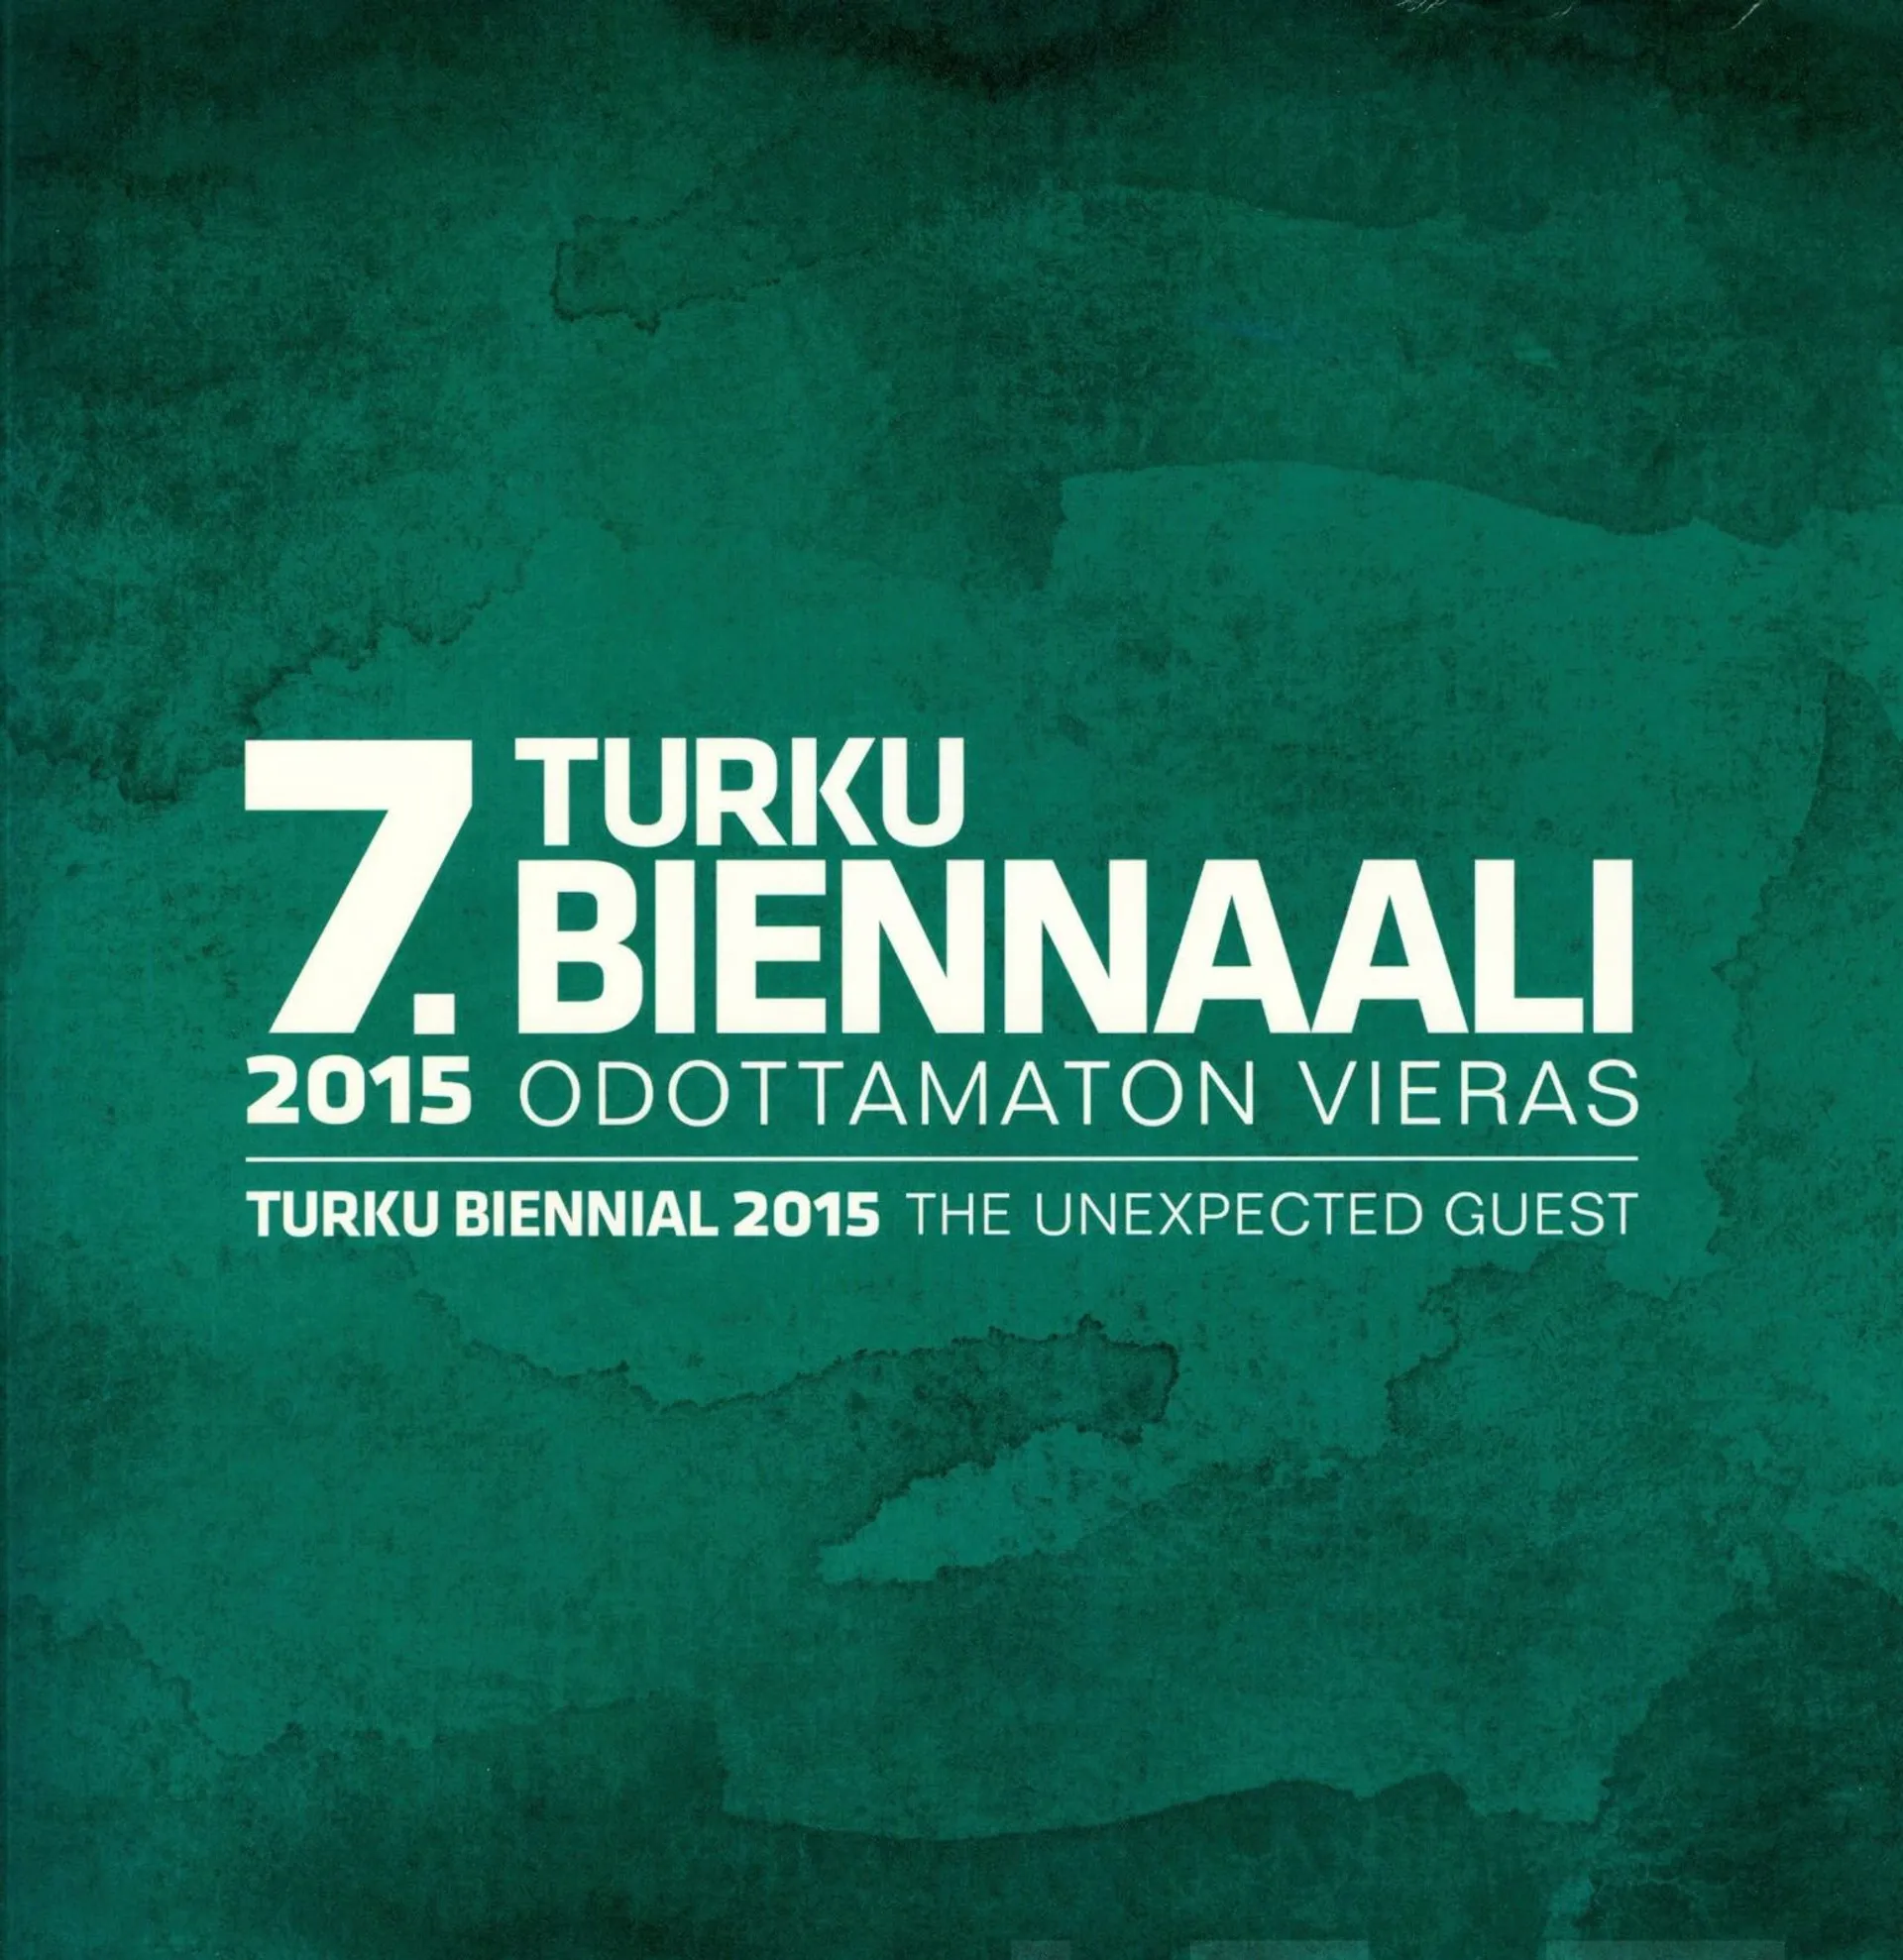 7. Turku biennaali 2015 - Turku Biennial 2015